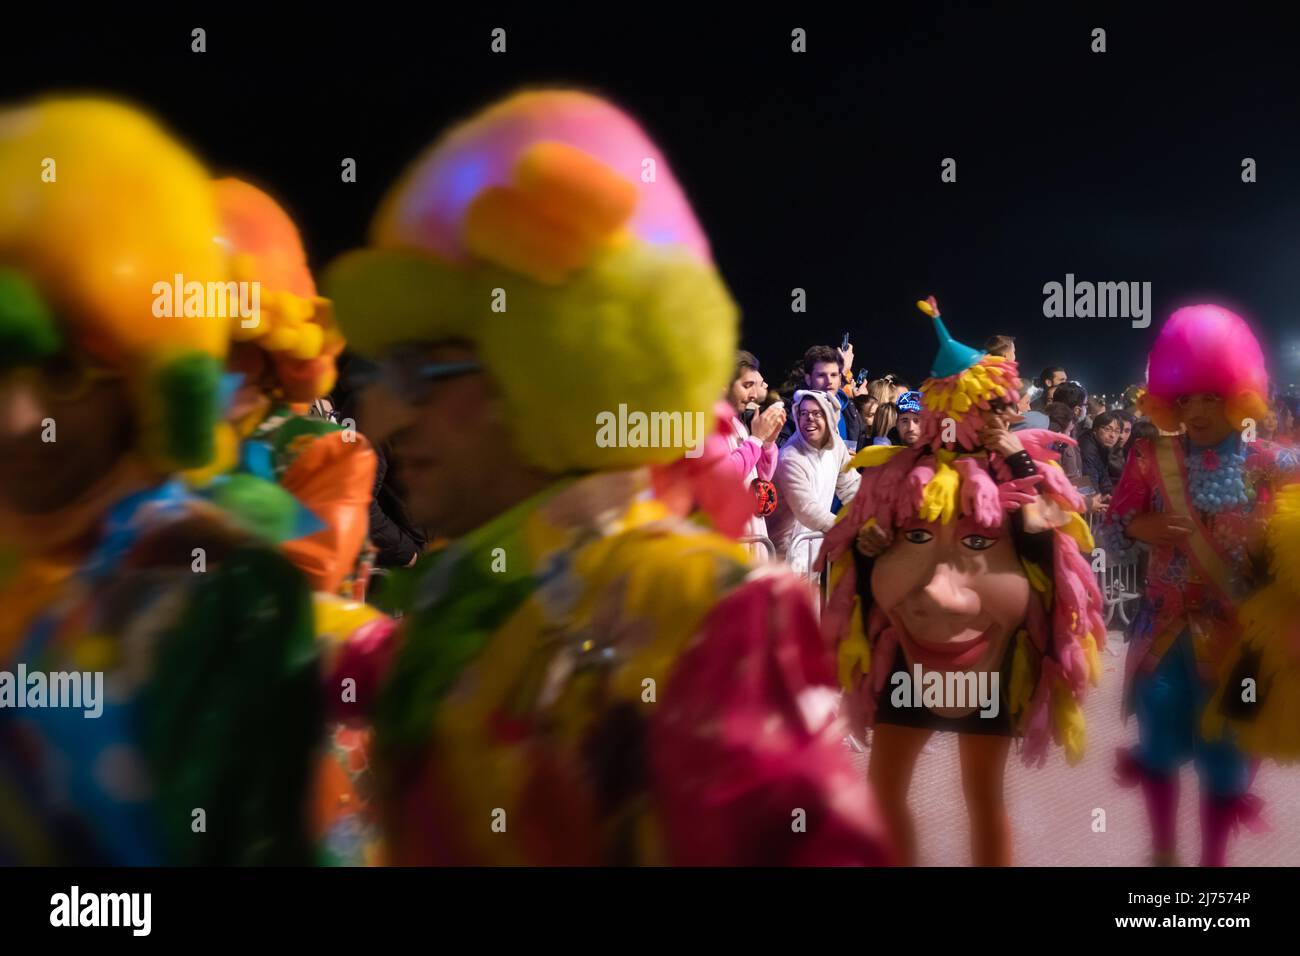 Attention sélective dans la foule: Un garçon souriant, déguisé dans un costume drôle, partage son enthousiasme pour le défilé surréaliste du Carnaval à Sitges, en Espagne Banque D'Images